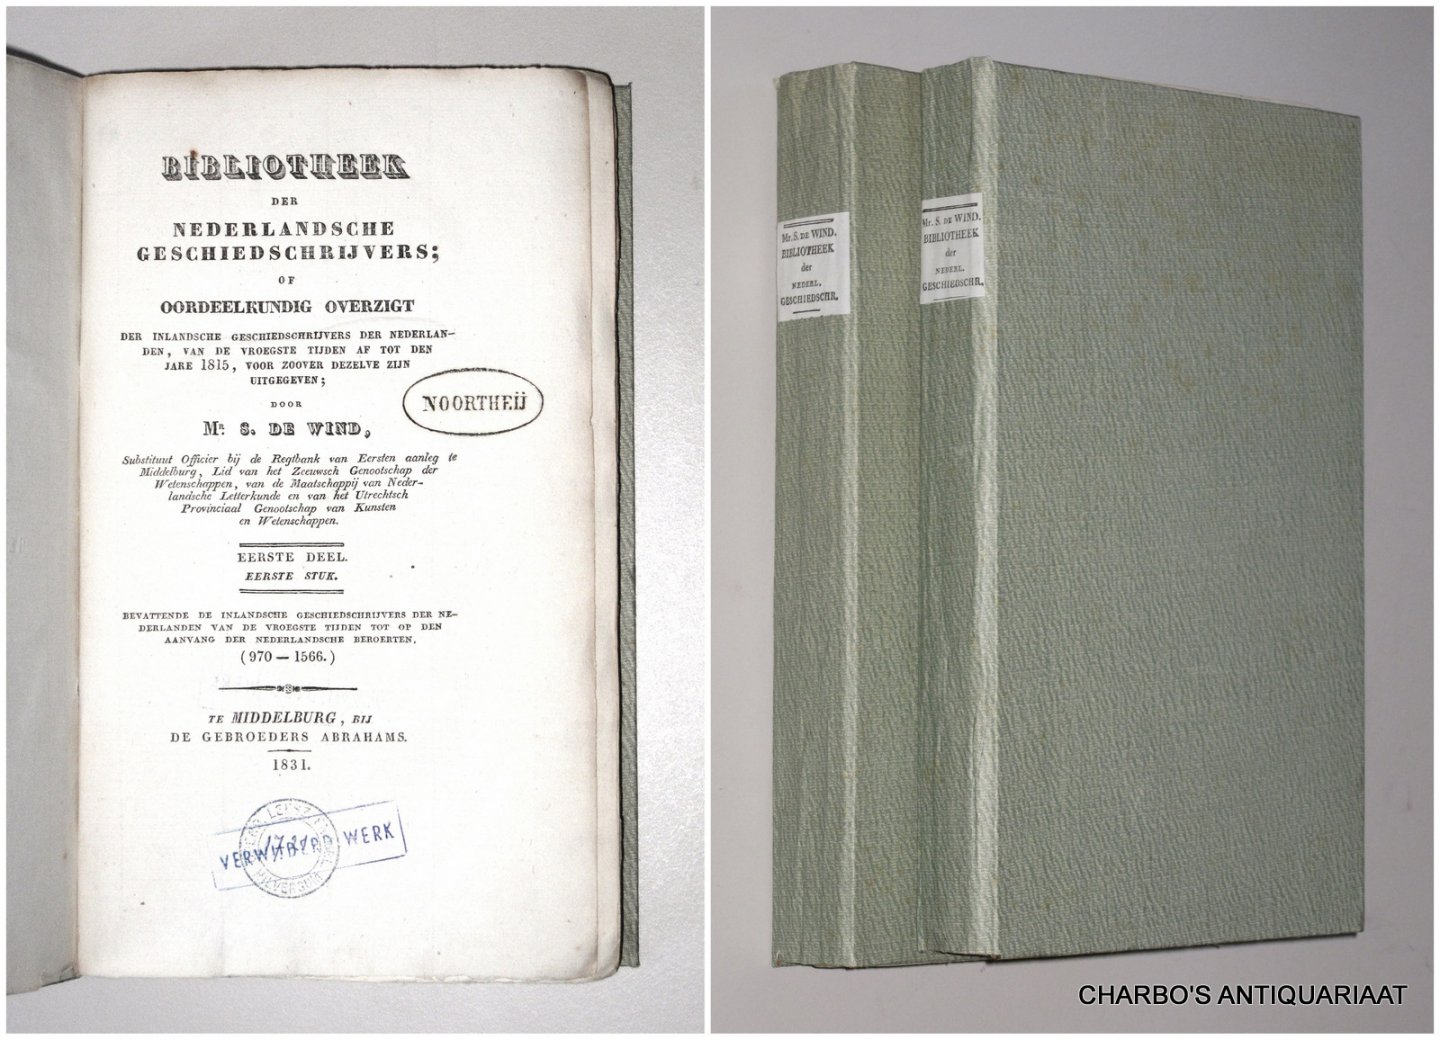 WIND, S. DE, - Bibliotheek der Nederlandsche geschiedschrijvers, of oordeelkundig overzigt der inlandsche geschiedschrijvers der Nederlanden, van de vroegste tijden af tot den jare 1815, voor zoover dezelve zijn uitgegeven.